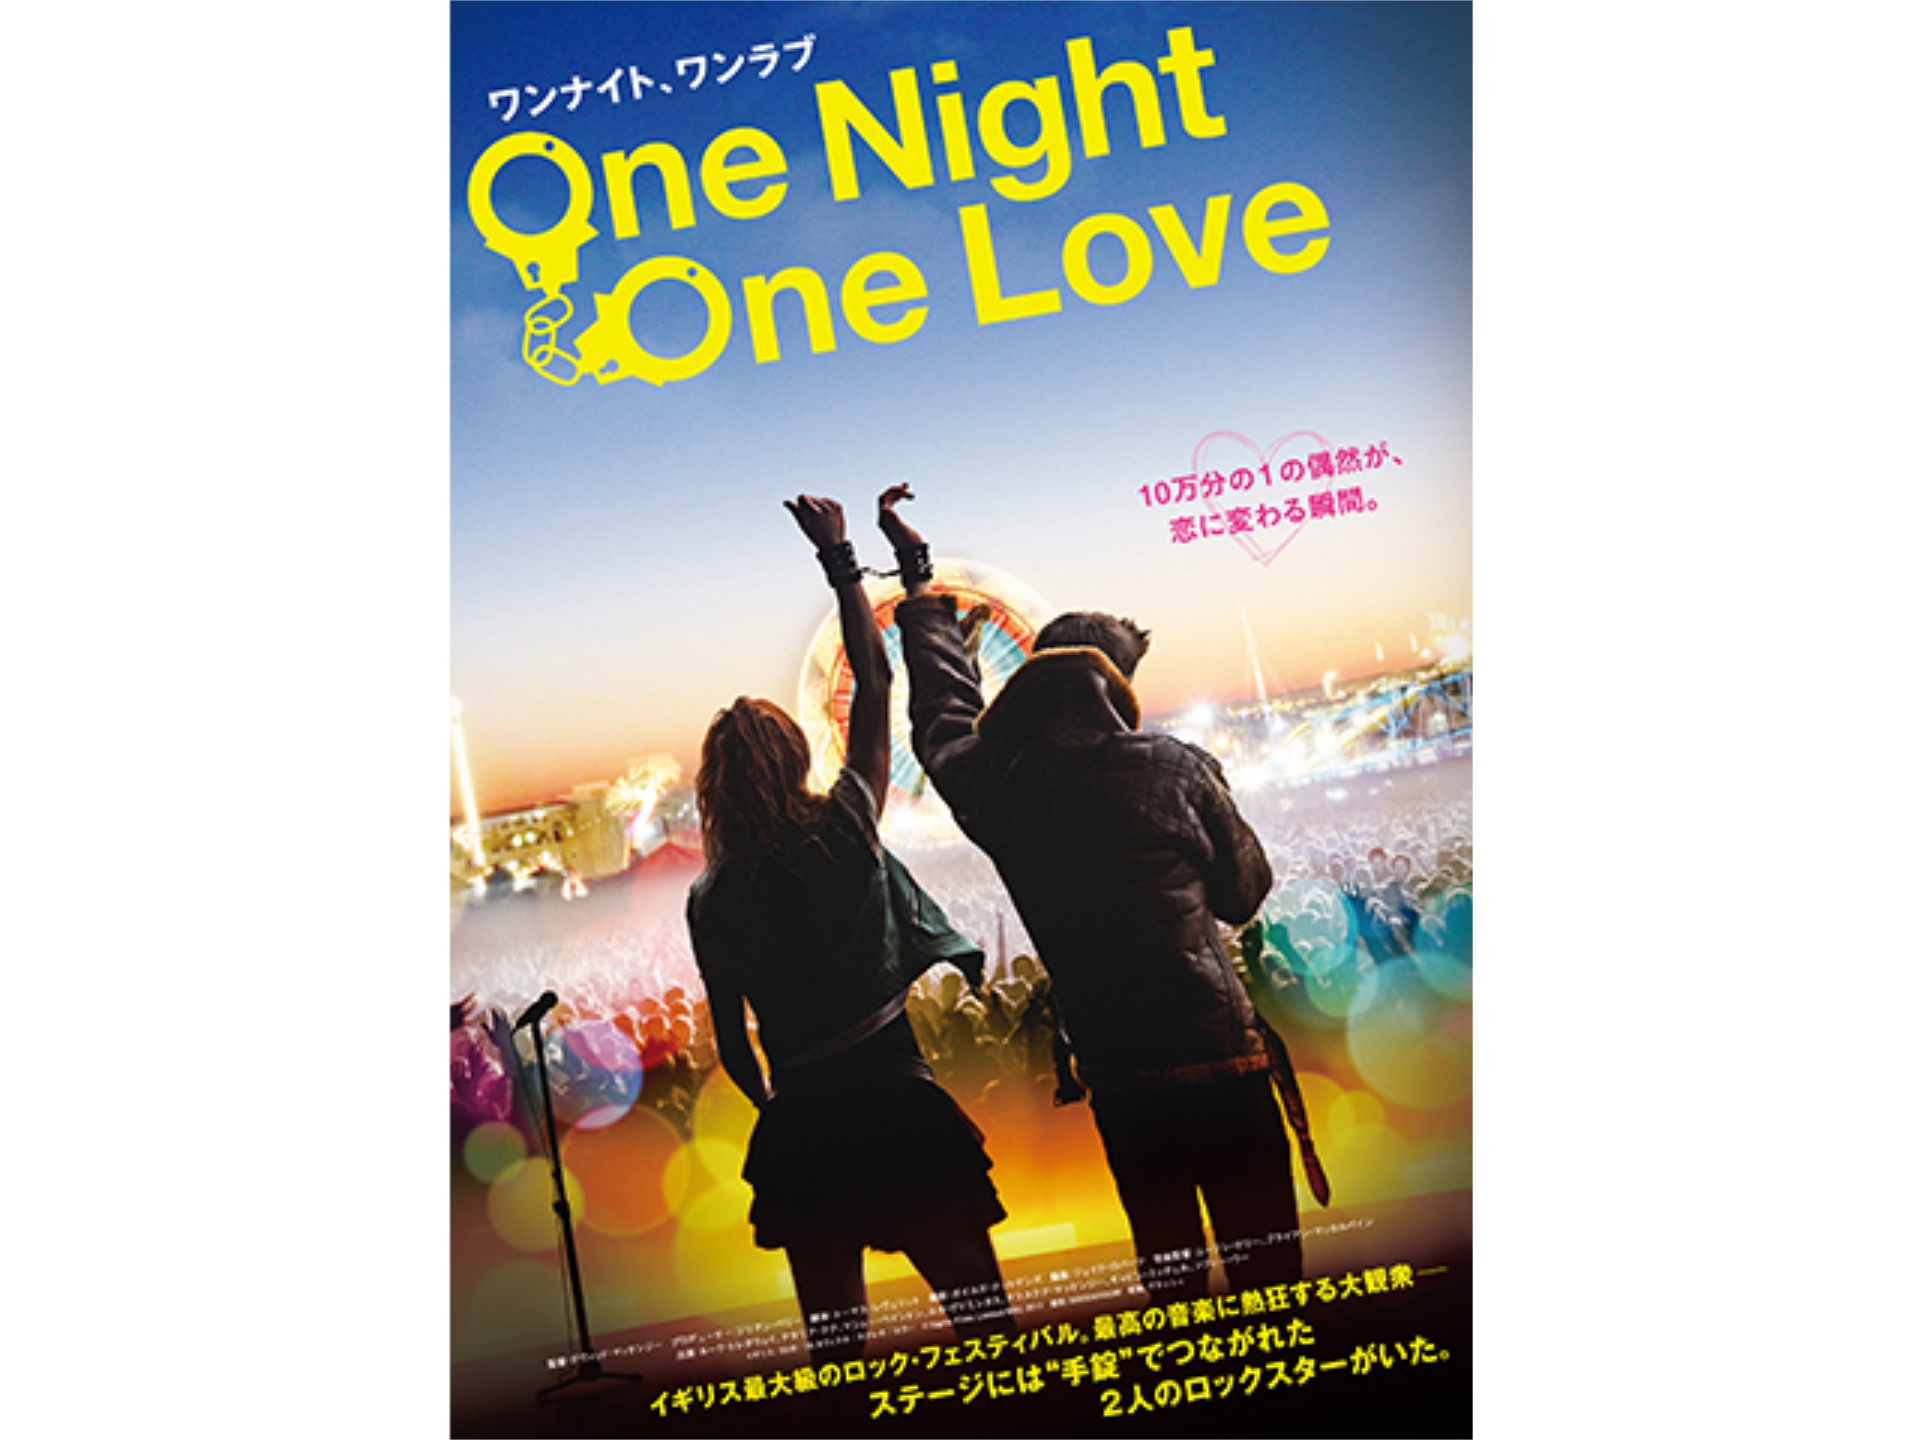 無料視聴あり 映画 One Night One Love の動画 初月無料 動画配信サービスのビデオマーケット